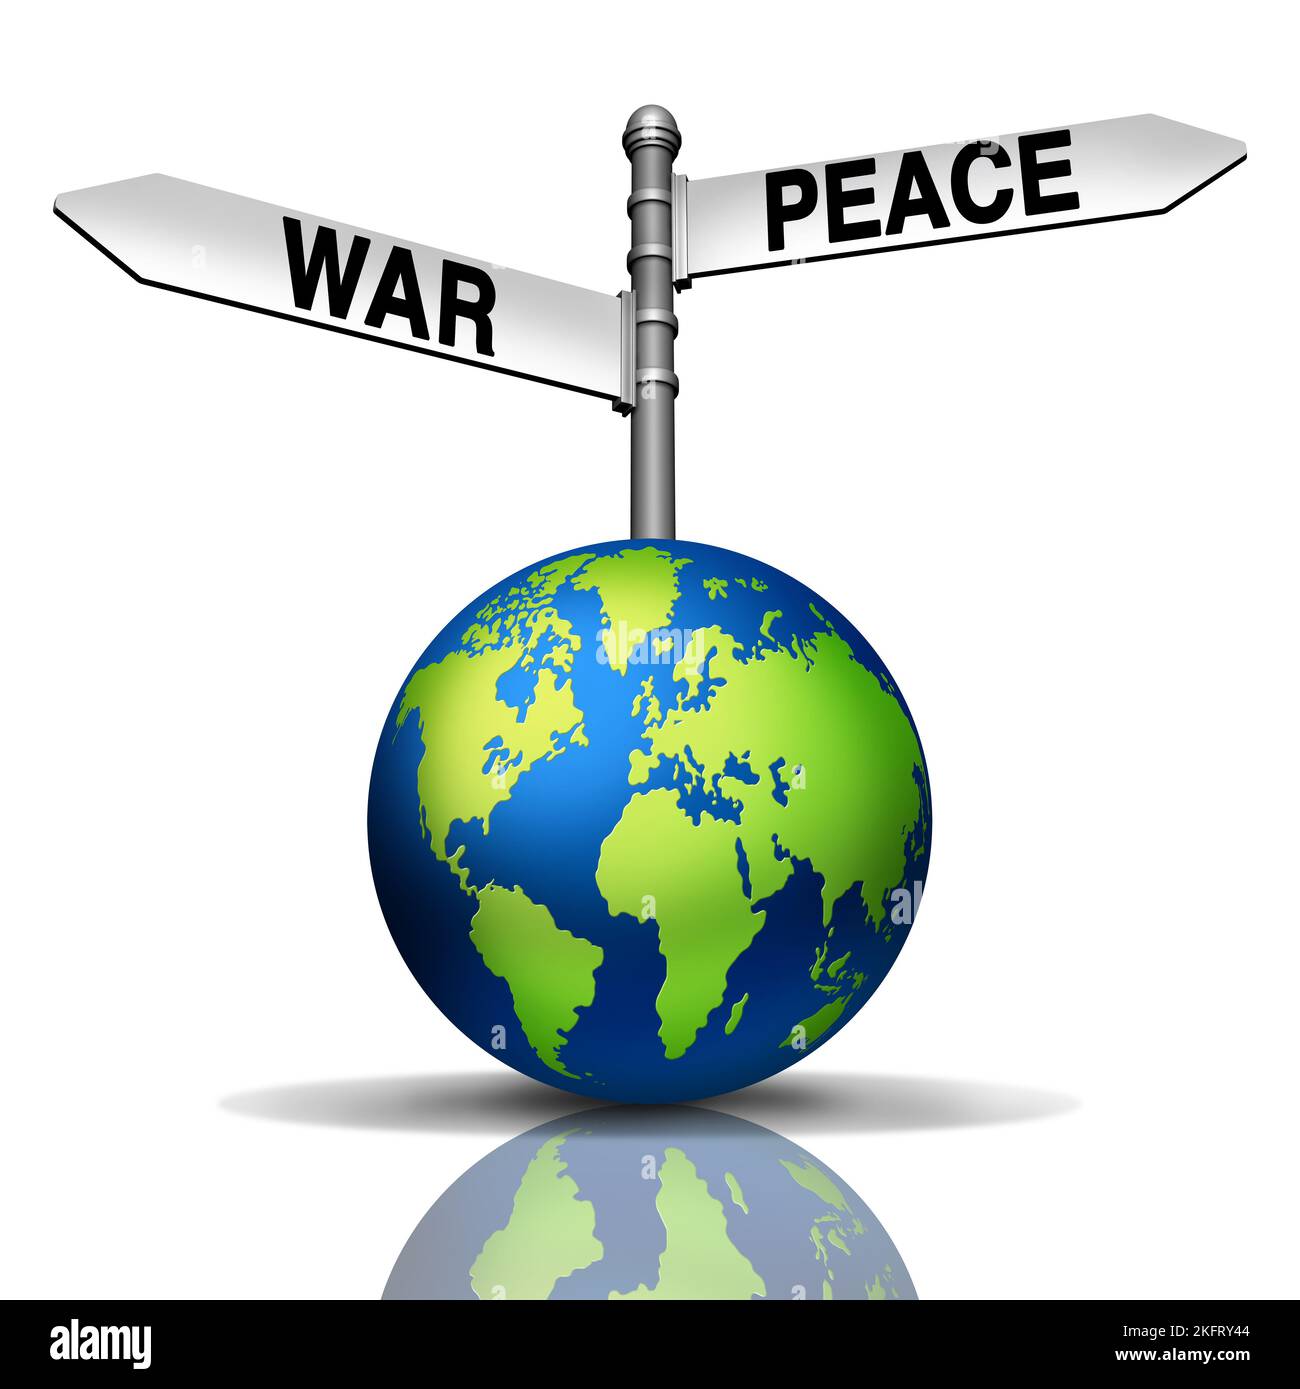 Globaler Krieg oder Frieden als Konflikt versus Diplomatie mit der Welt und Straßenschildern, die in verschiedene geopolitische Richtungen gehen, als Metapher Stockfoto